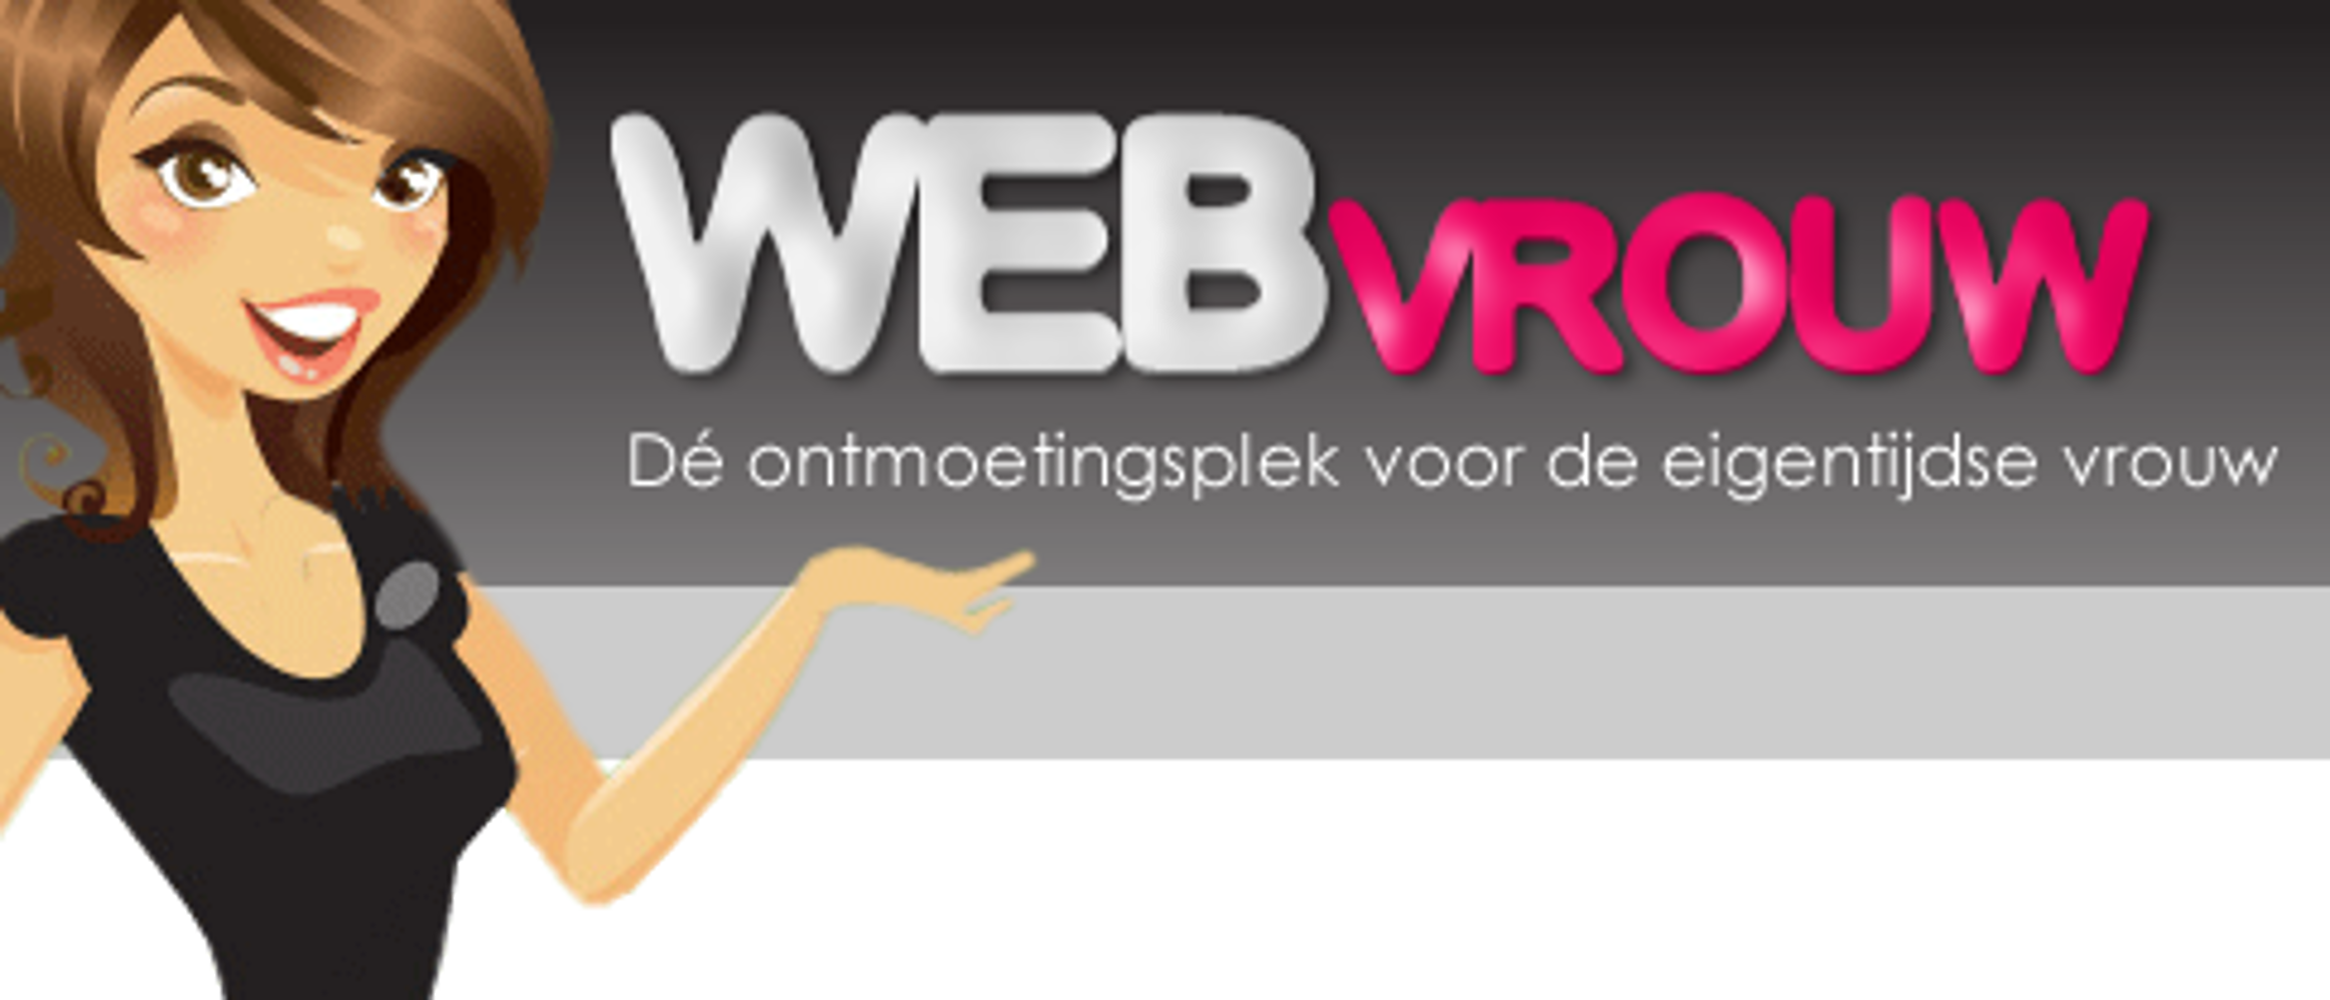 Webvrouw.nl